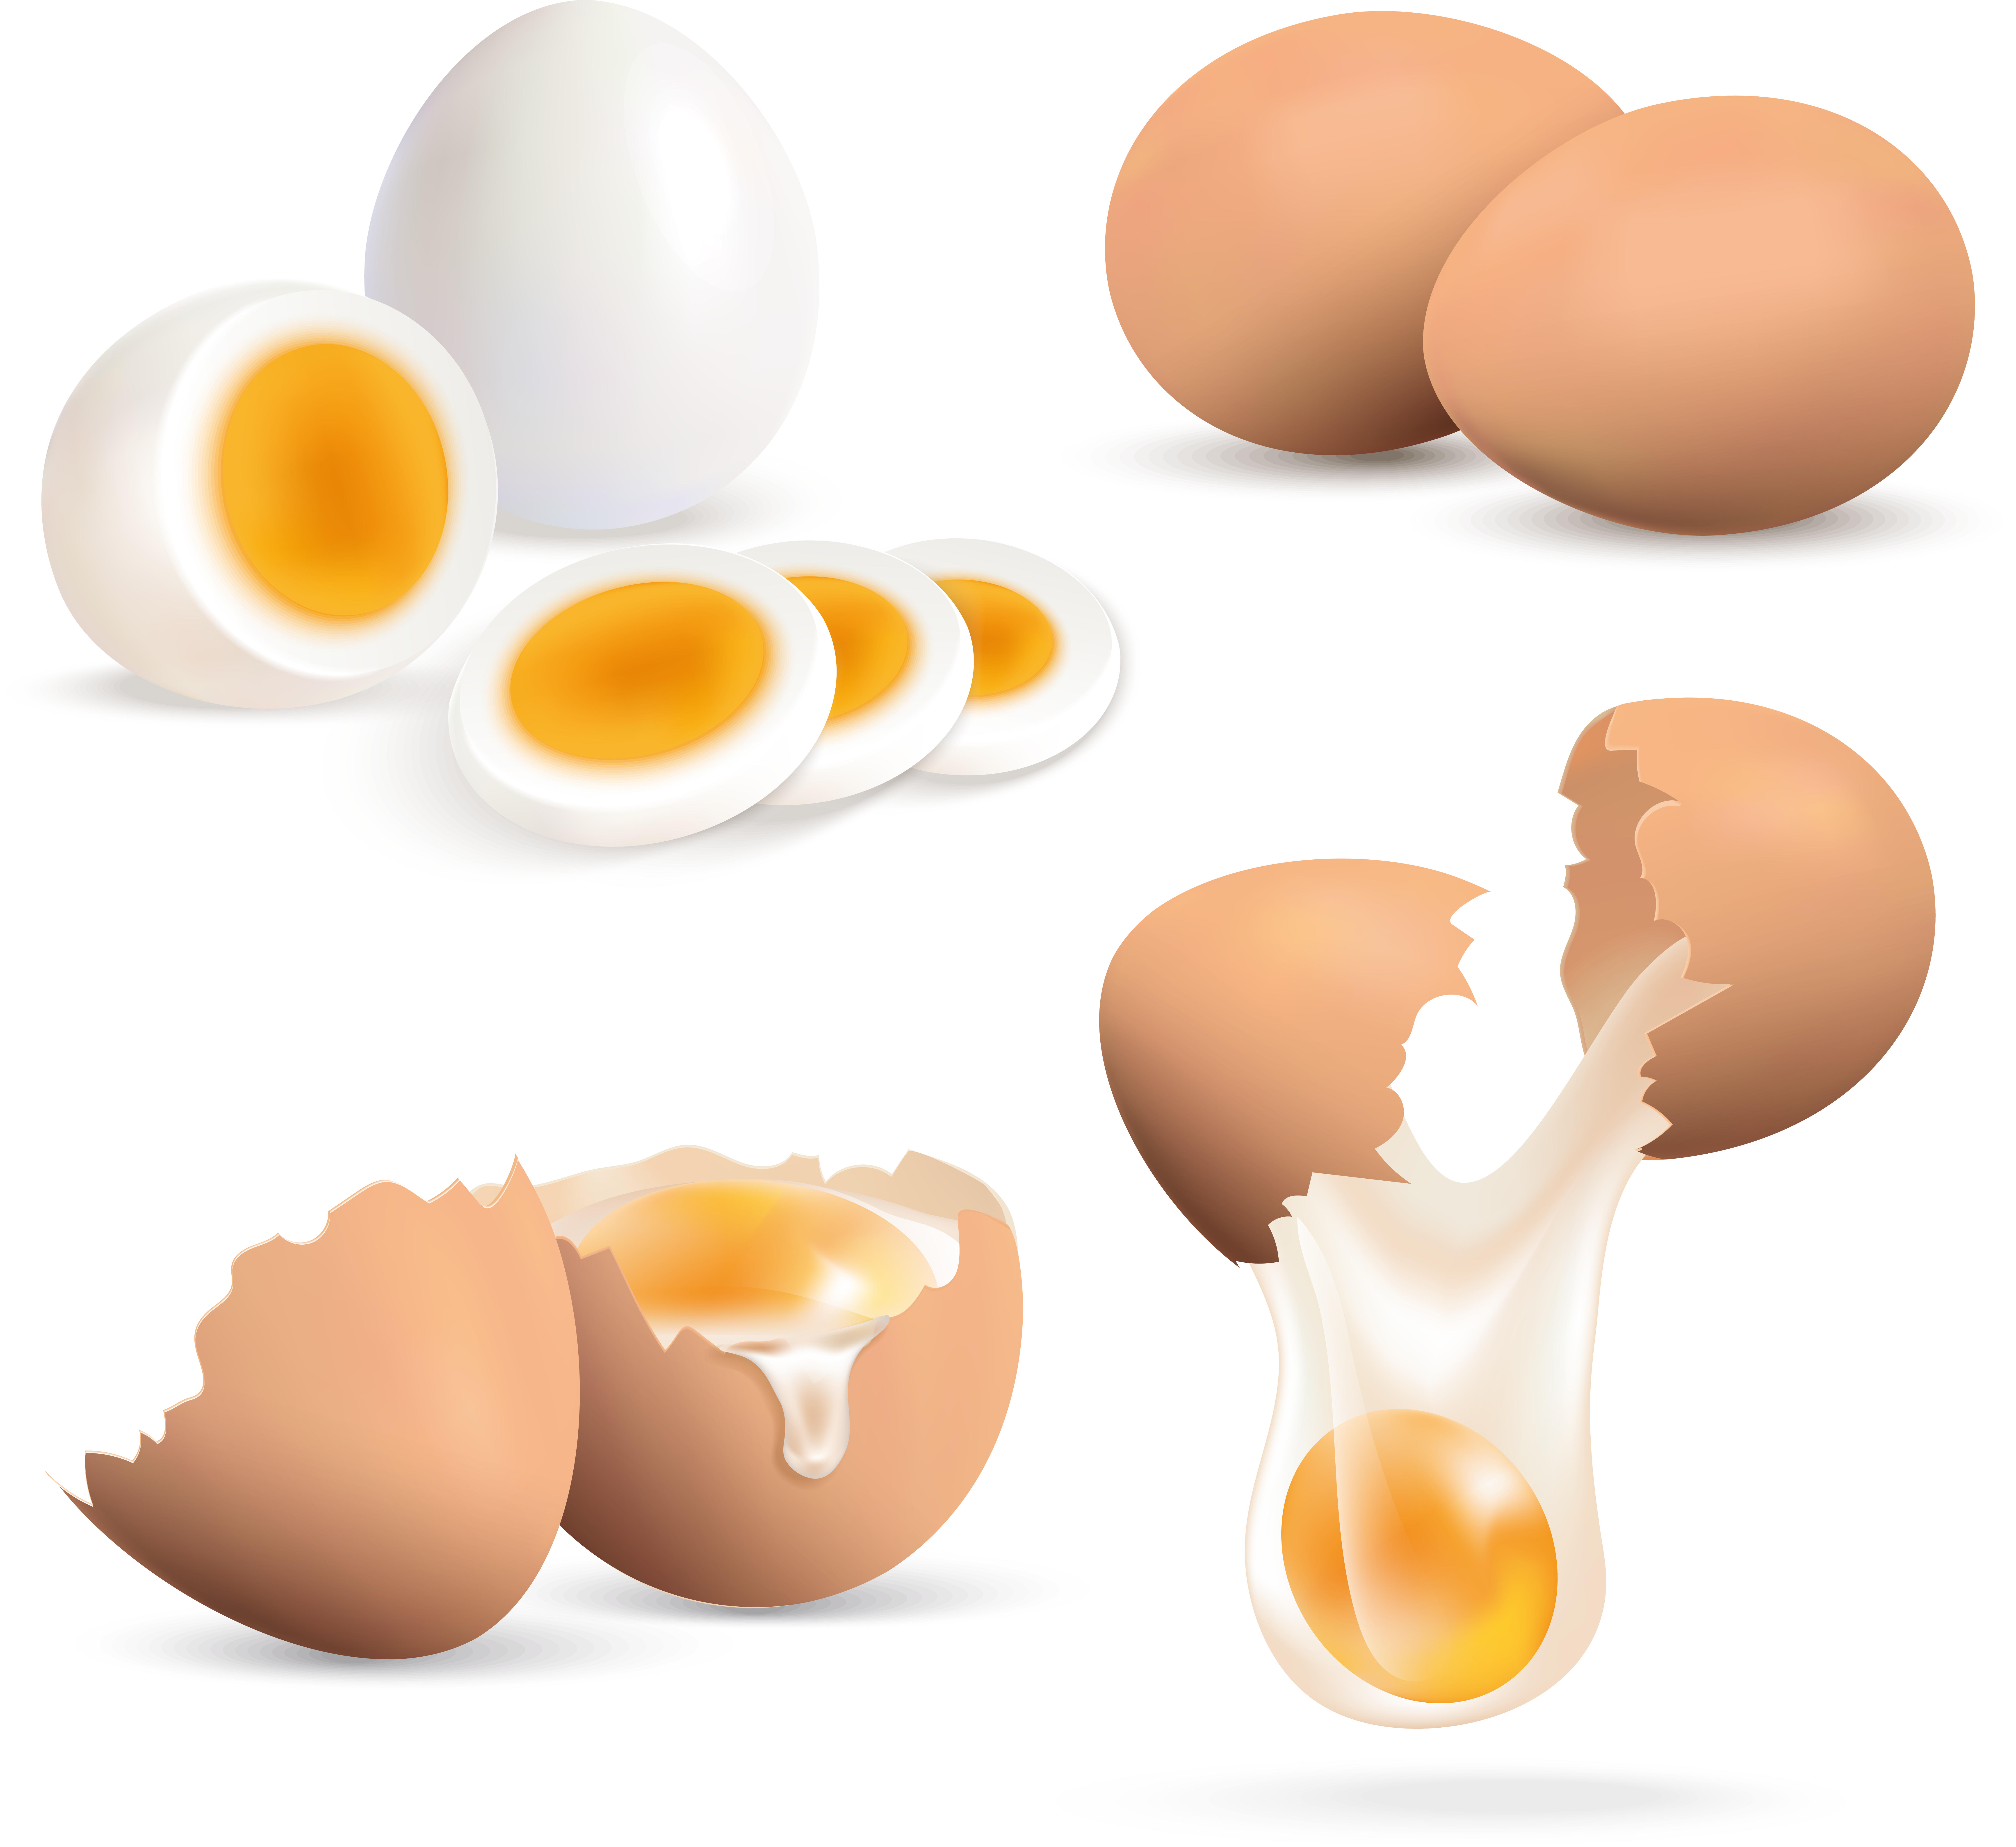 Uovo incrinato, uovo tagliato